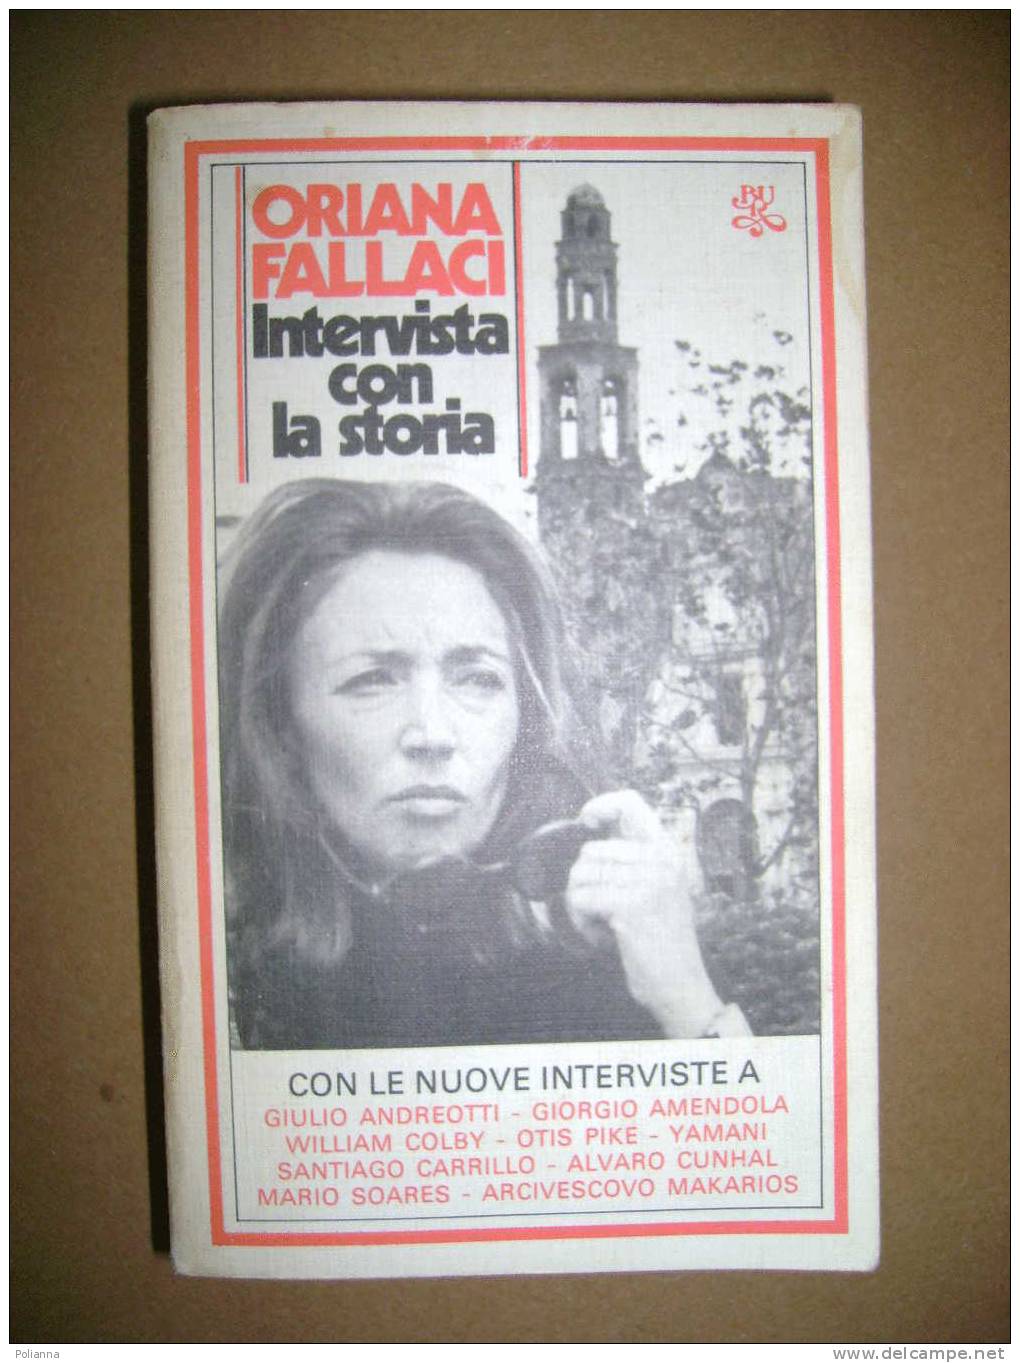 PAC/20 Oriana Fallaci INTERVISTA CON LA STORIA Bur Rizzoli 1980 - Journalisme